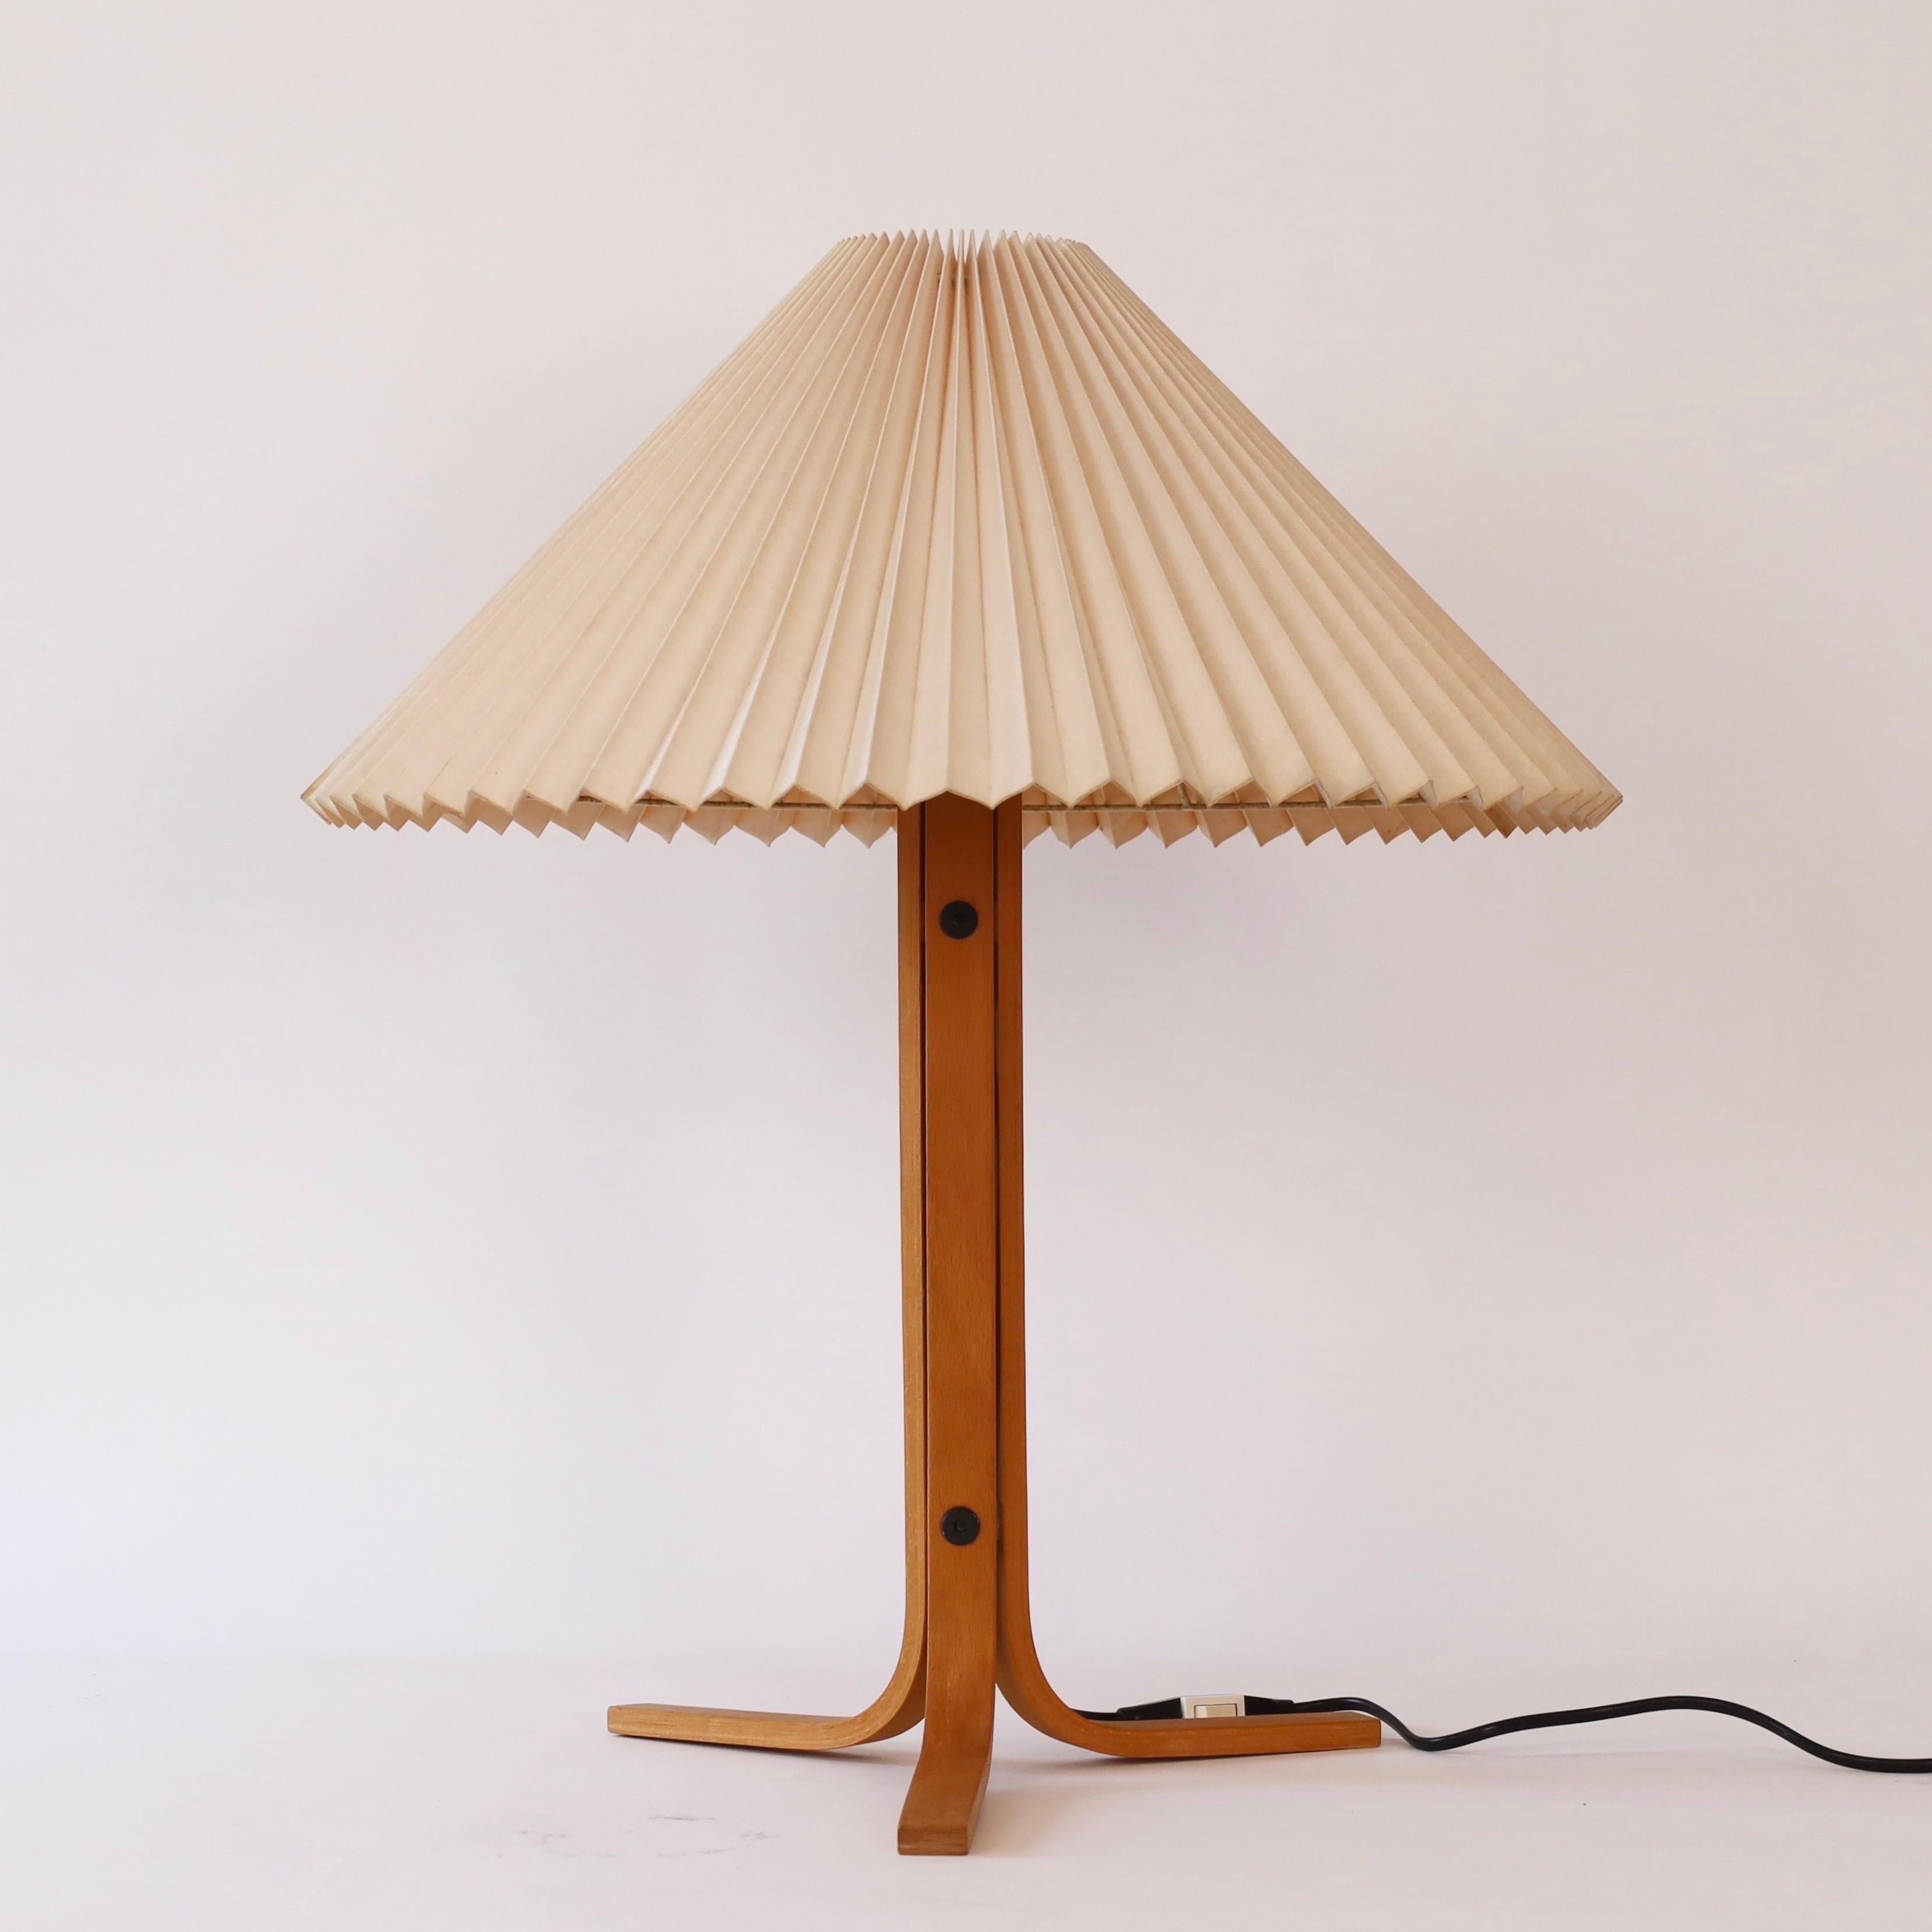 Lampe de bureau tripode en bois de Beeche, conçue par Mads Caprani dans les années 1970 pour Caprani Light. Une rareté pour une belle maison.

* A  lampe de bureau tripode en placage de hêtre courbé avec un abat-jour en tissu plissé beige clair
*